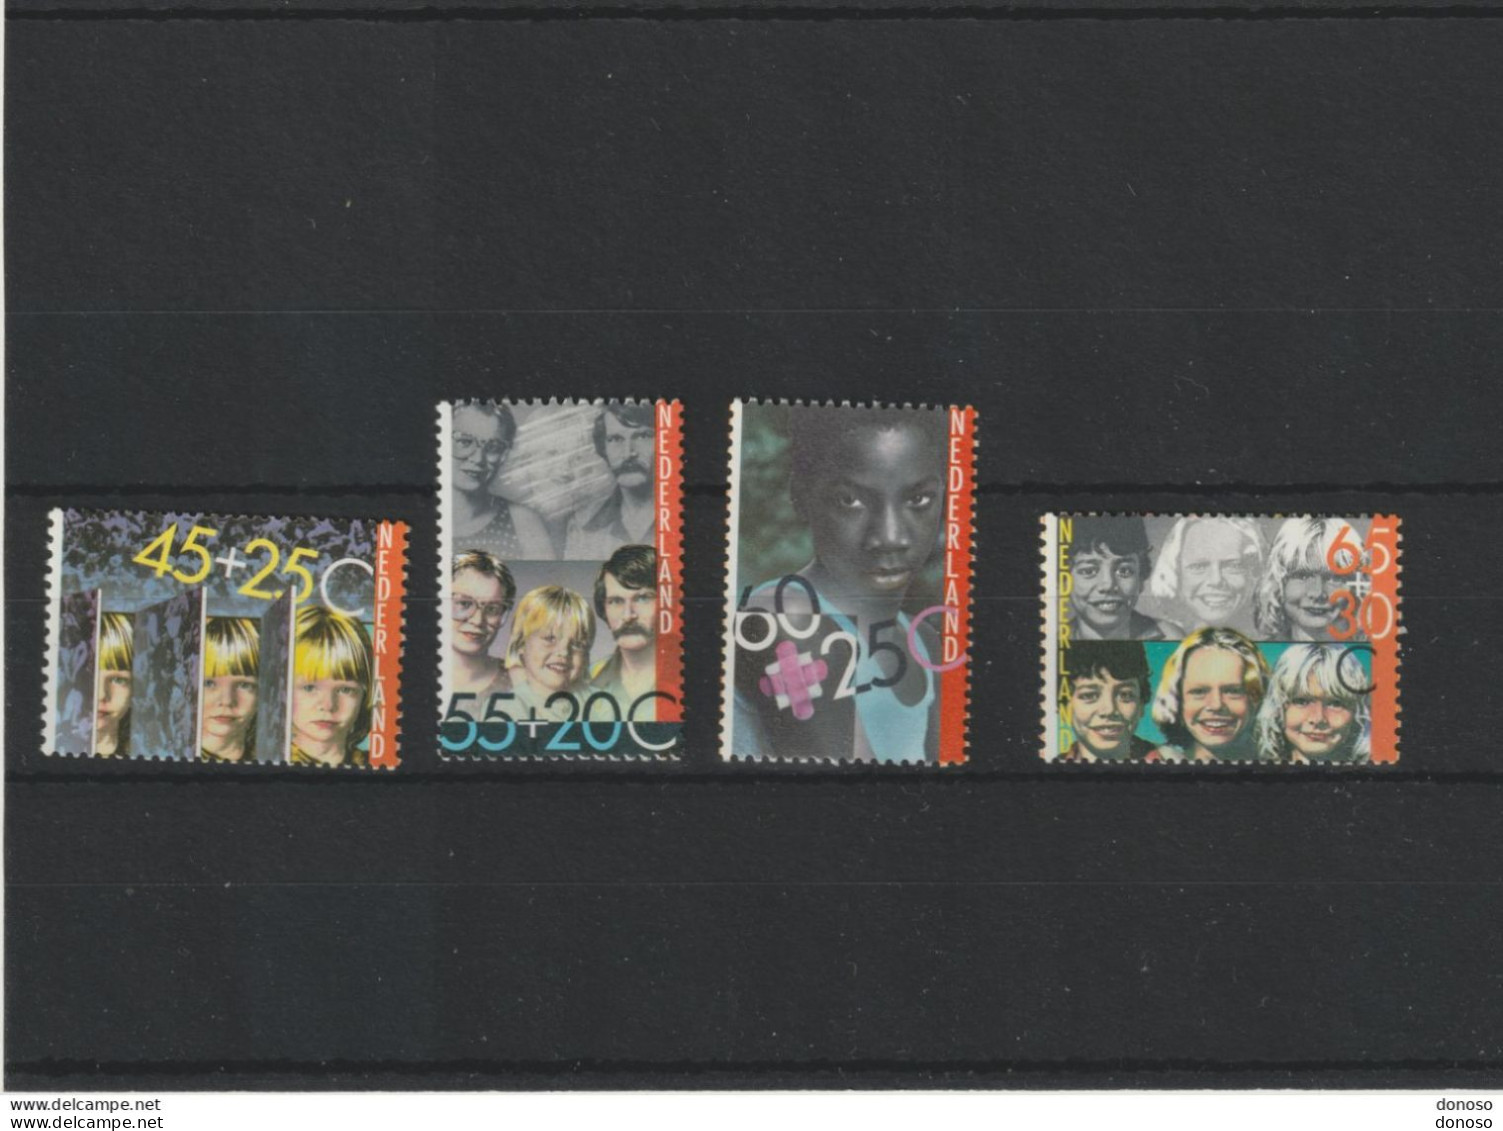 PAYS BAS 1981 Année Internationale Des Handicapées Yvert 1163-1166, Michel 1193-1196 NEUF** MNH Cote 4 Euros - Unused Stamps